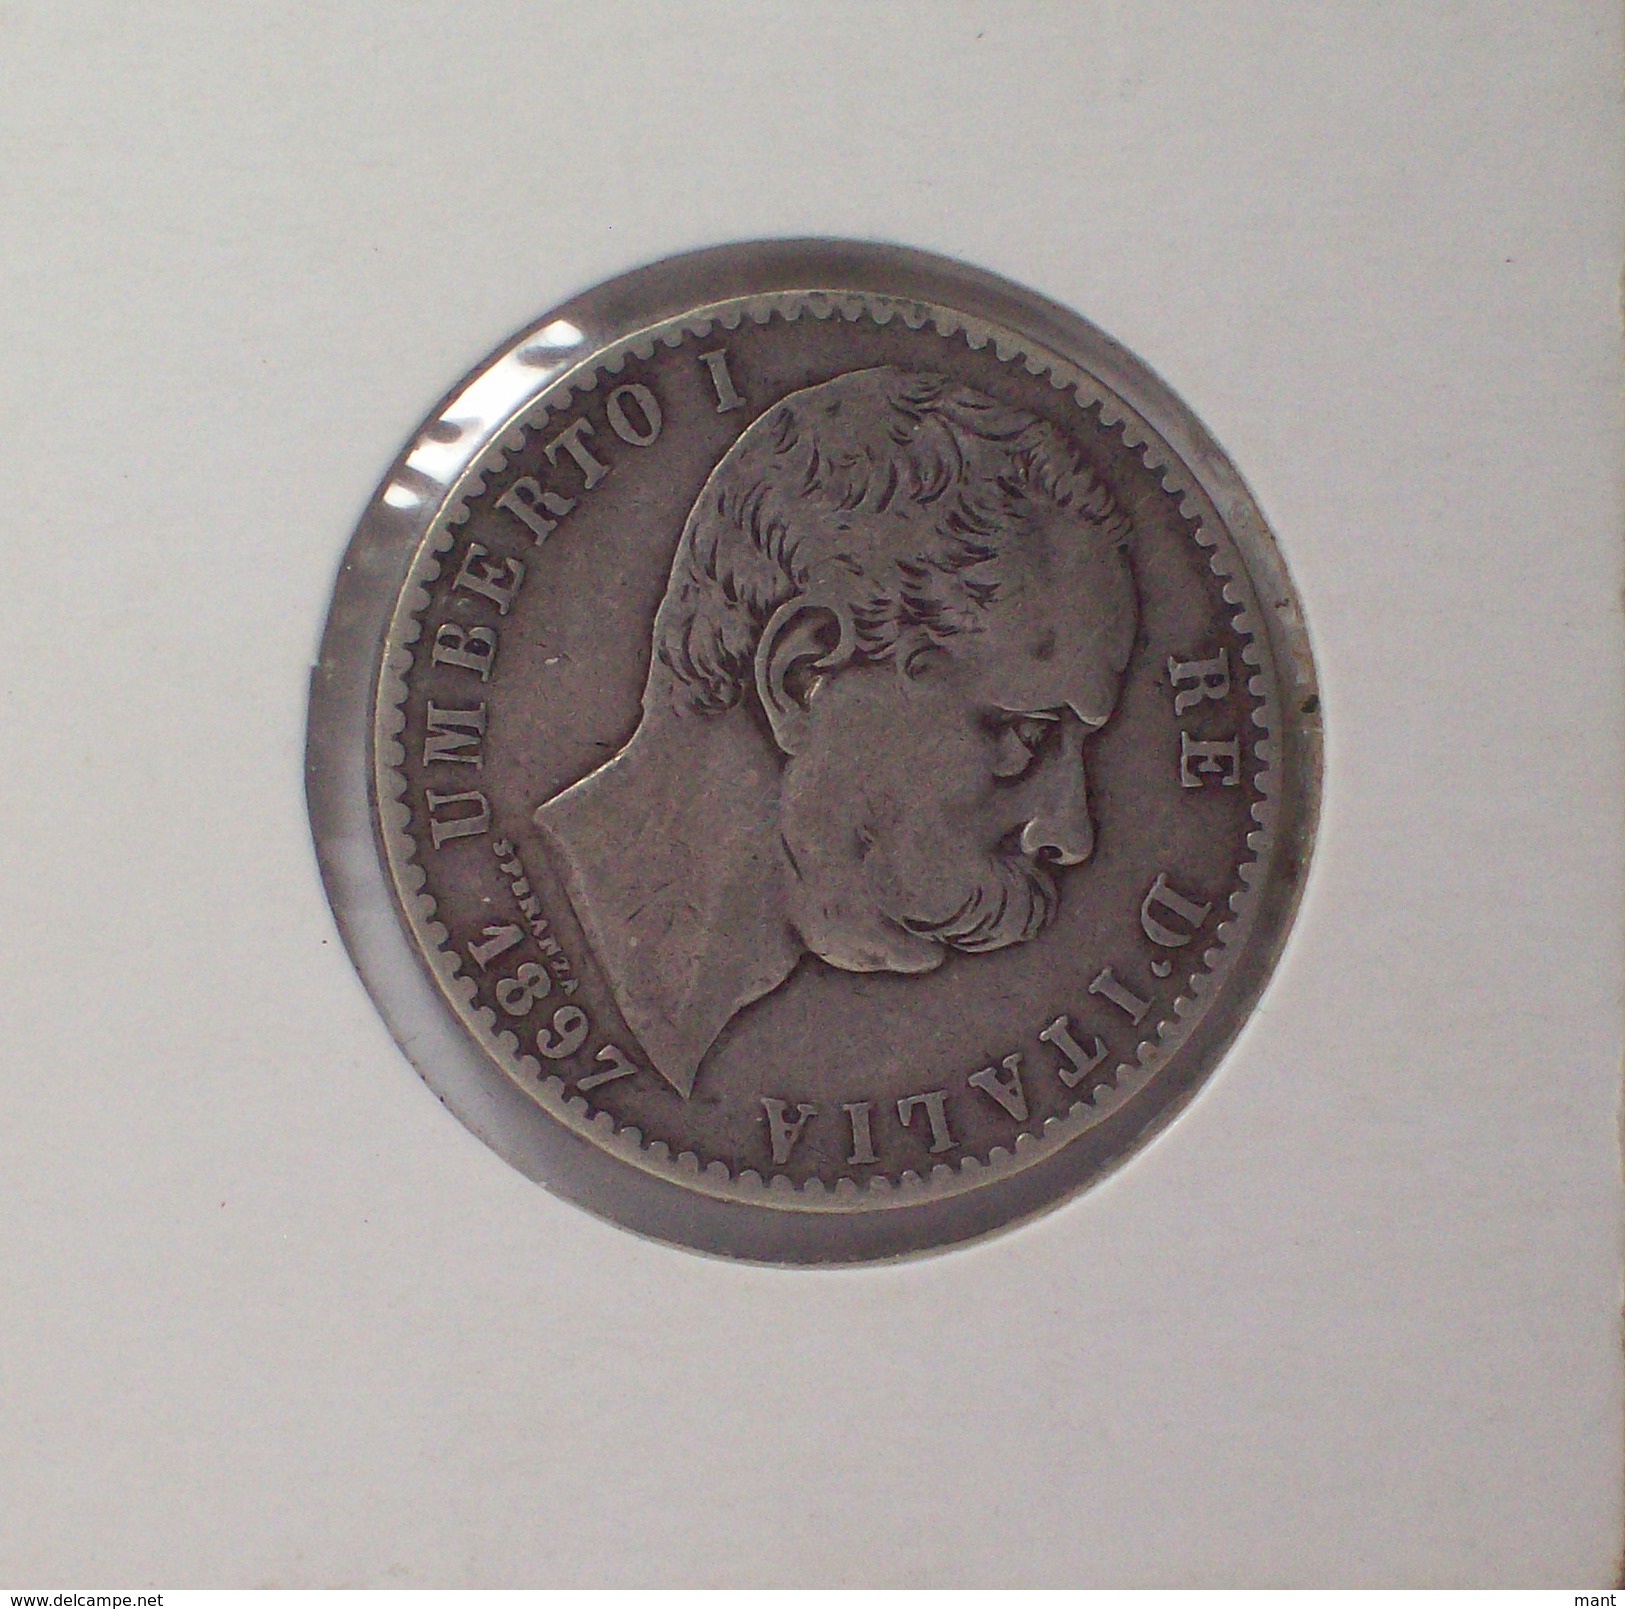 Regno D'Italia UMBERTO I 2 Lire 1897 Moneta In Argento Silver BUONA CONSERVAZIONE - 1878-1900 : Umberto I